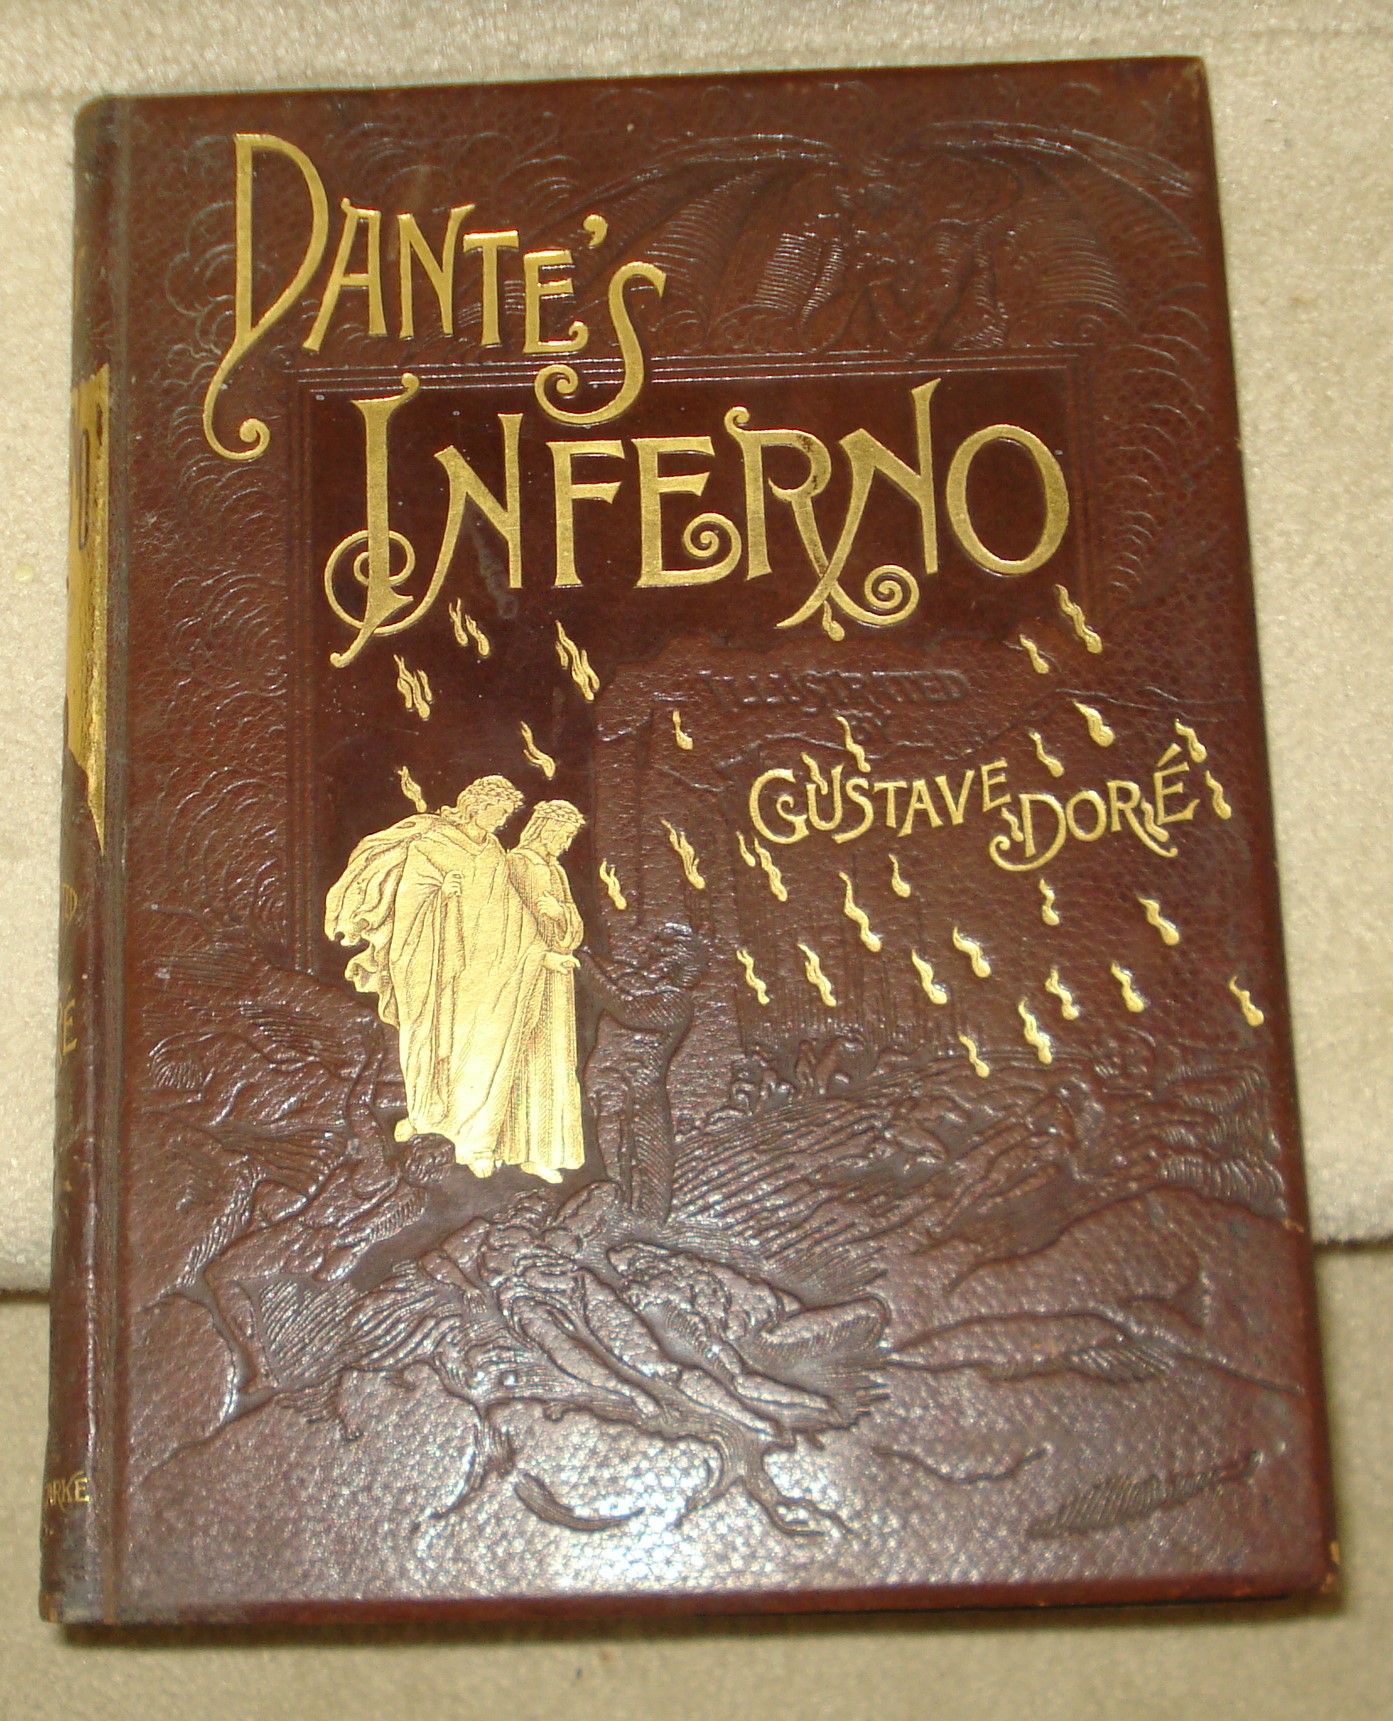 BOOK - Dante's Inferno Gustave Dore pic1.jpg